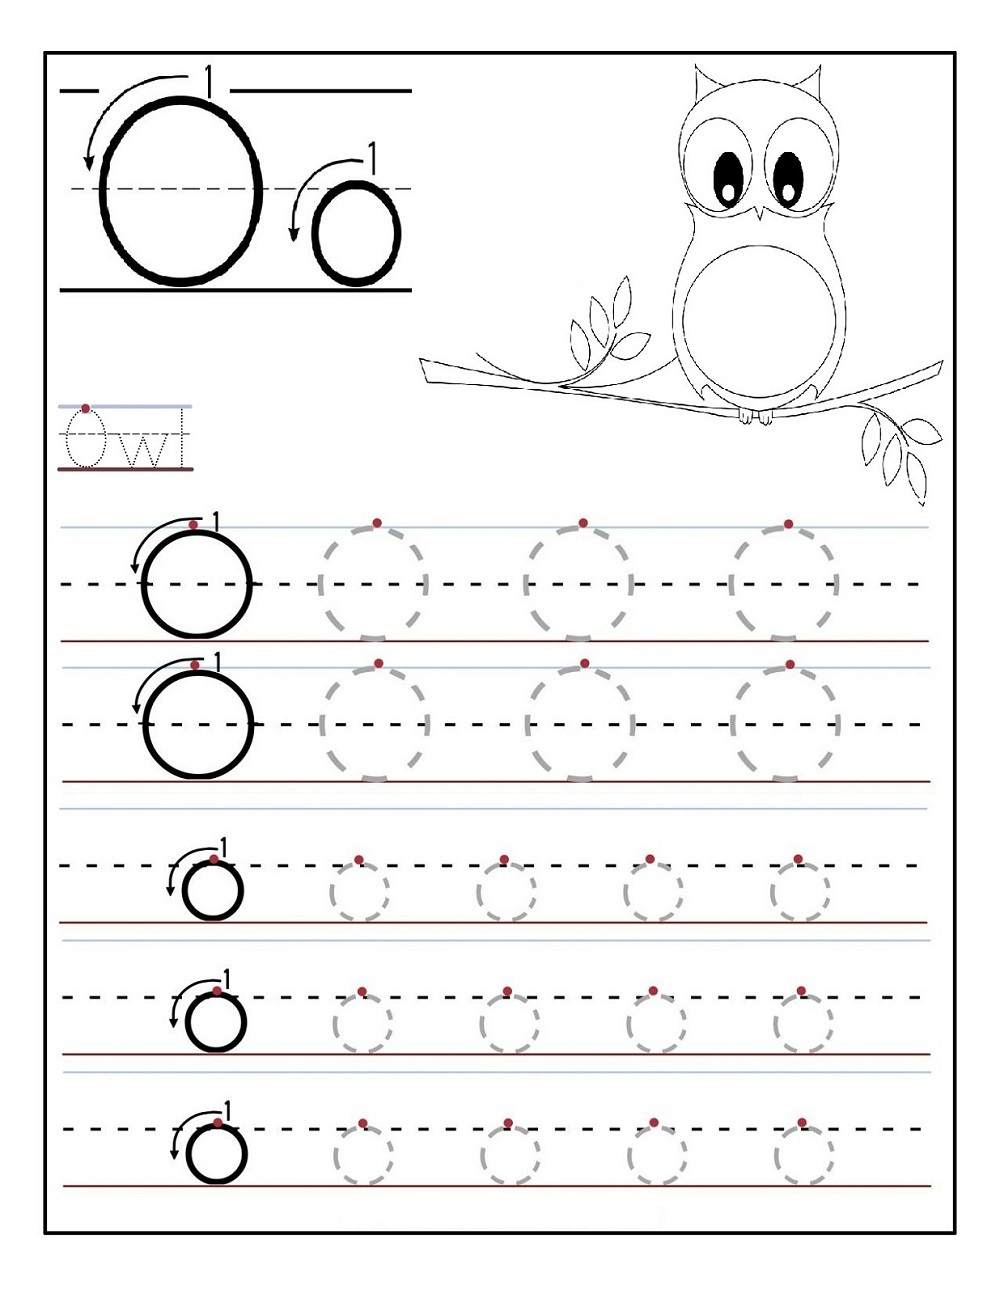 Tracing Letter O Worksheets | Activity Shelter inside Letter O Worksheets For Kindergarten